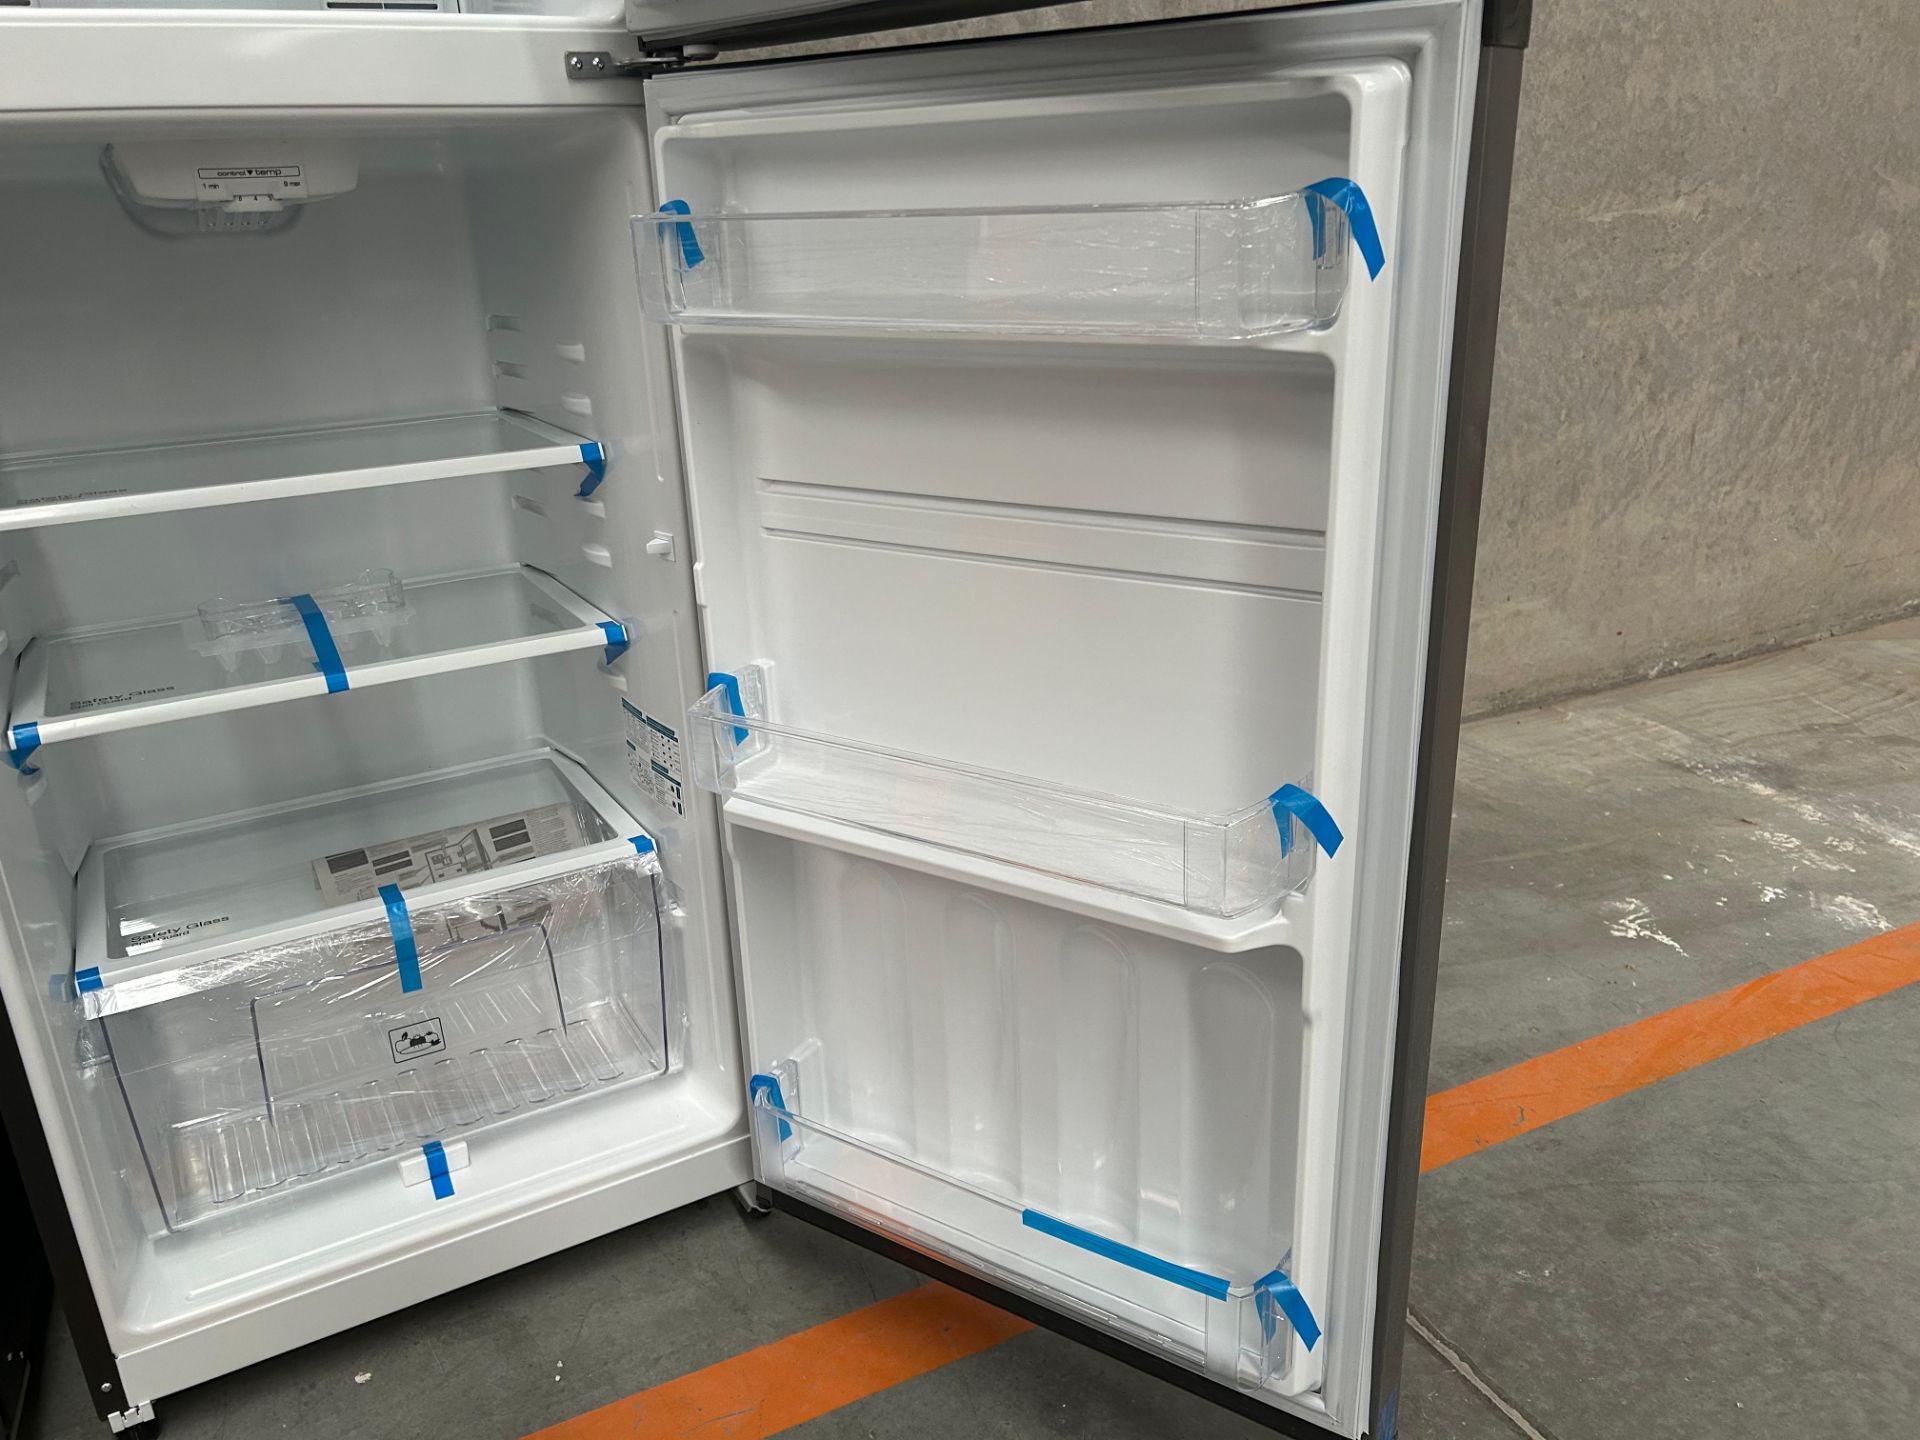 Lote de 2 Refrigeradores contiene: 1 Refrigerador Marca MABE, Modelo RME360PVMRM0, Serie 21969, Col - Image 13 of 15